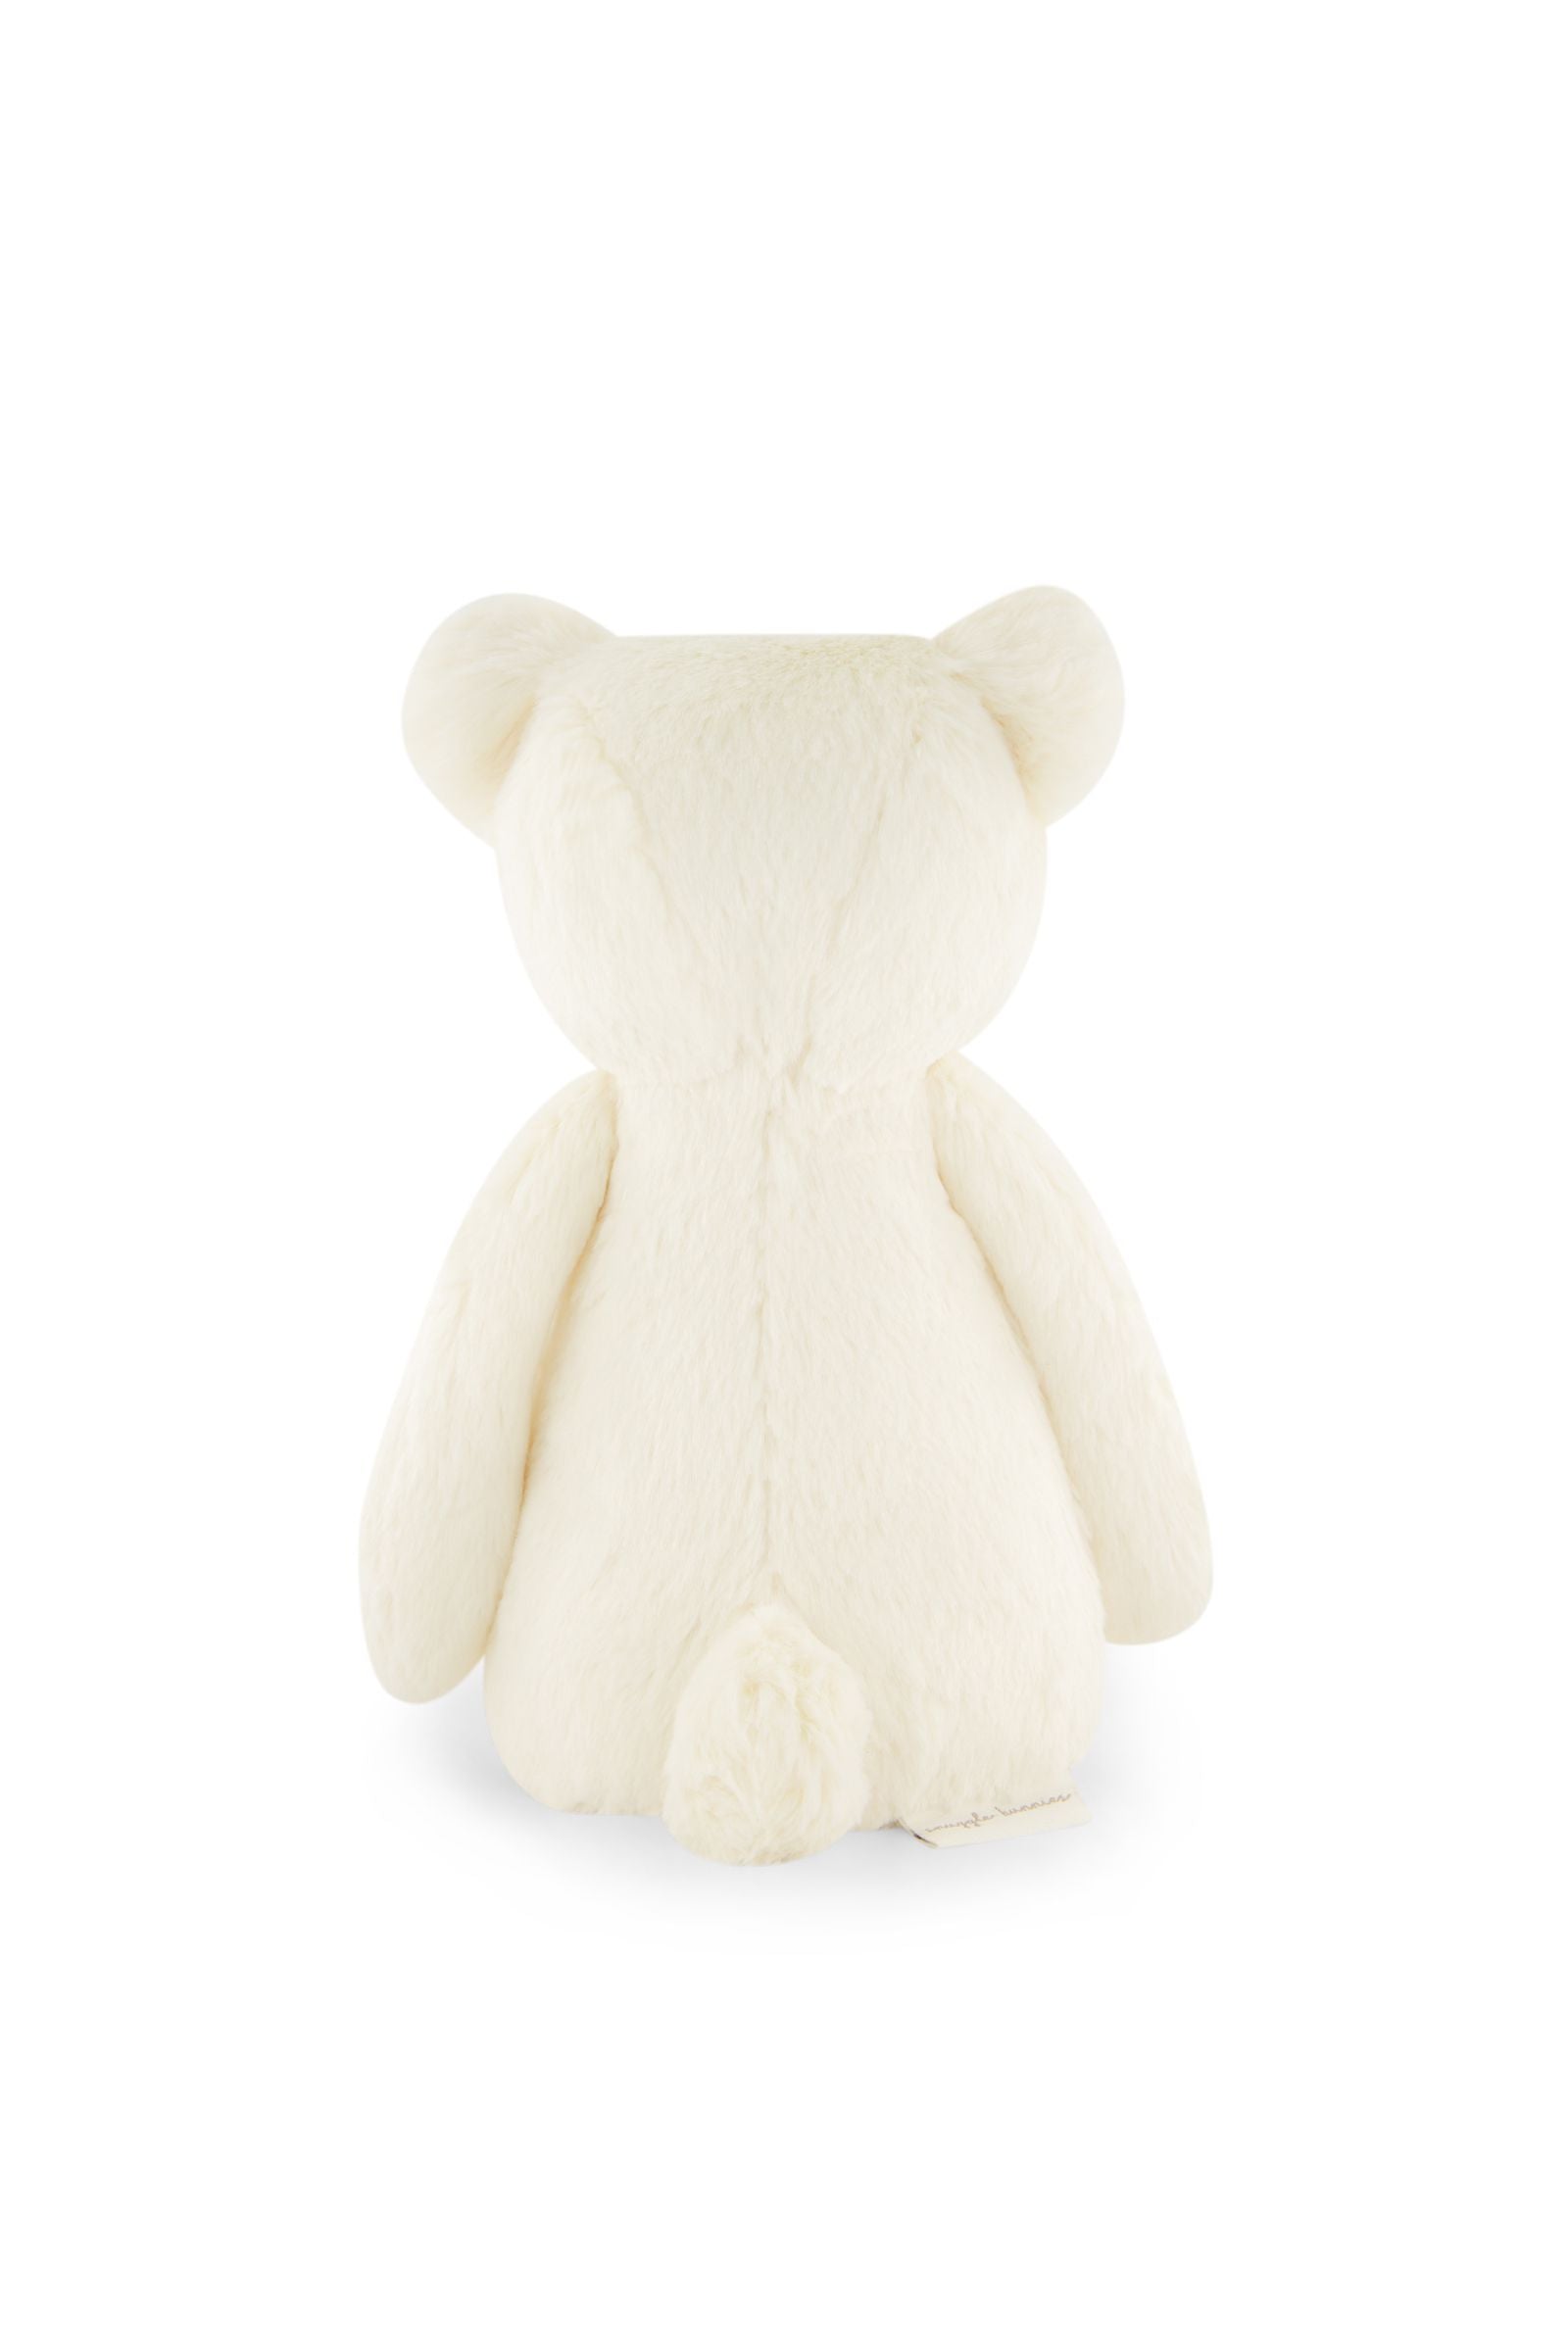 Snuggle Bunnies - George the Bear - Marshmallow 30cm-Toys-Jamie Kay-The Bay Room